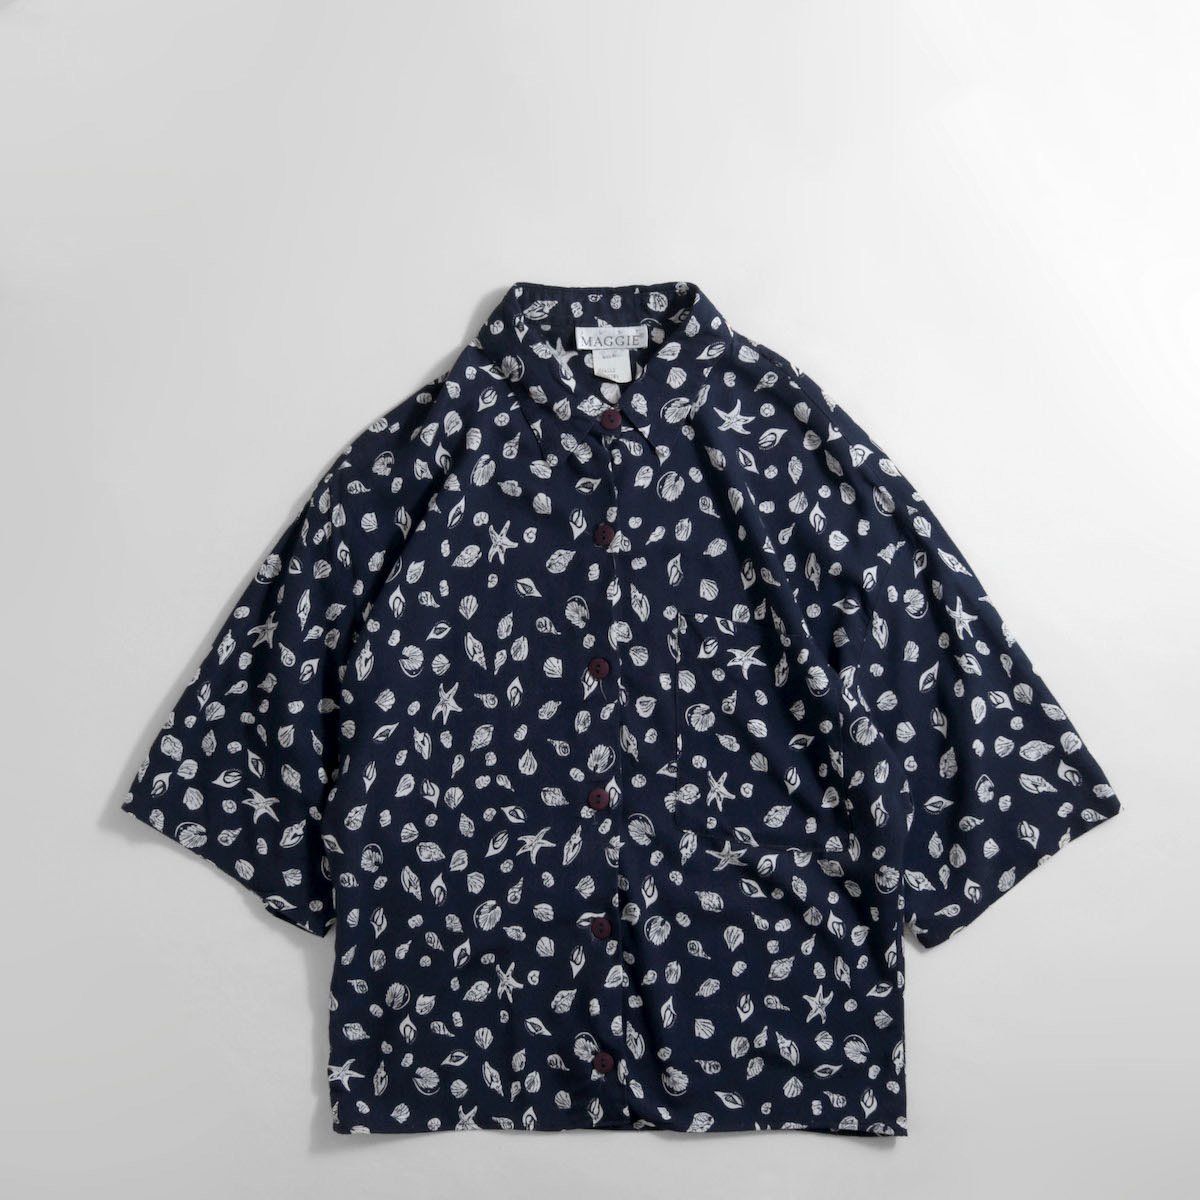 レディース] ~1990s USA製 シェル柄 シャツ 半袖 貝 ネイビー